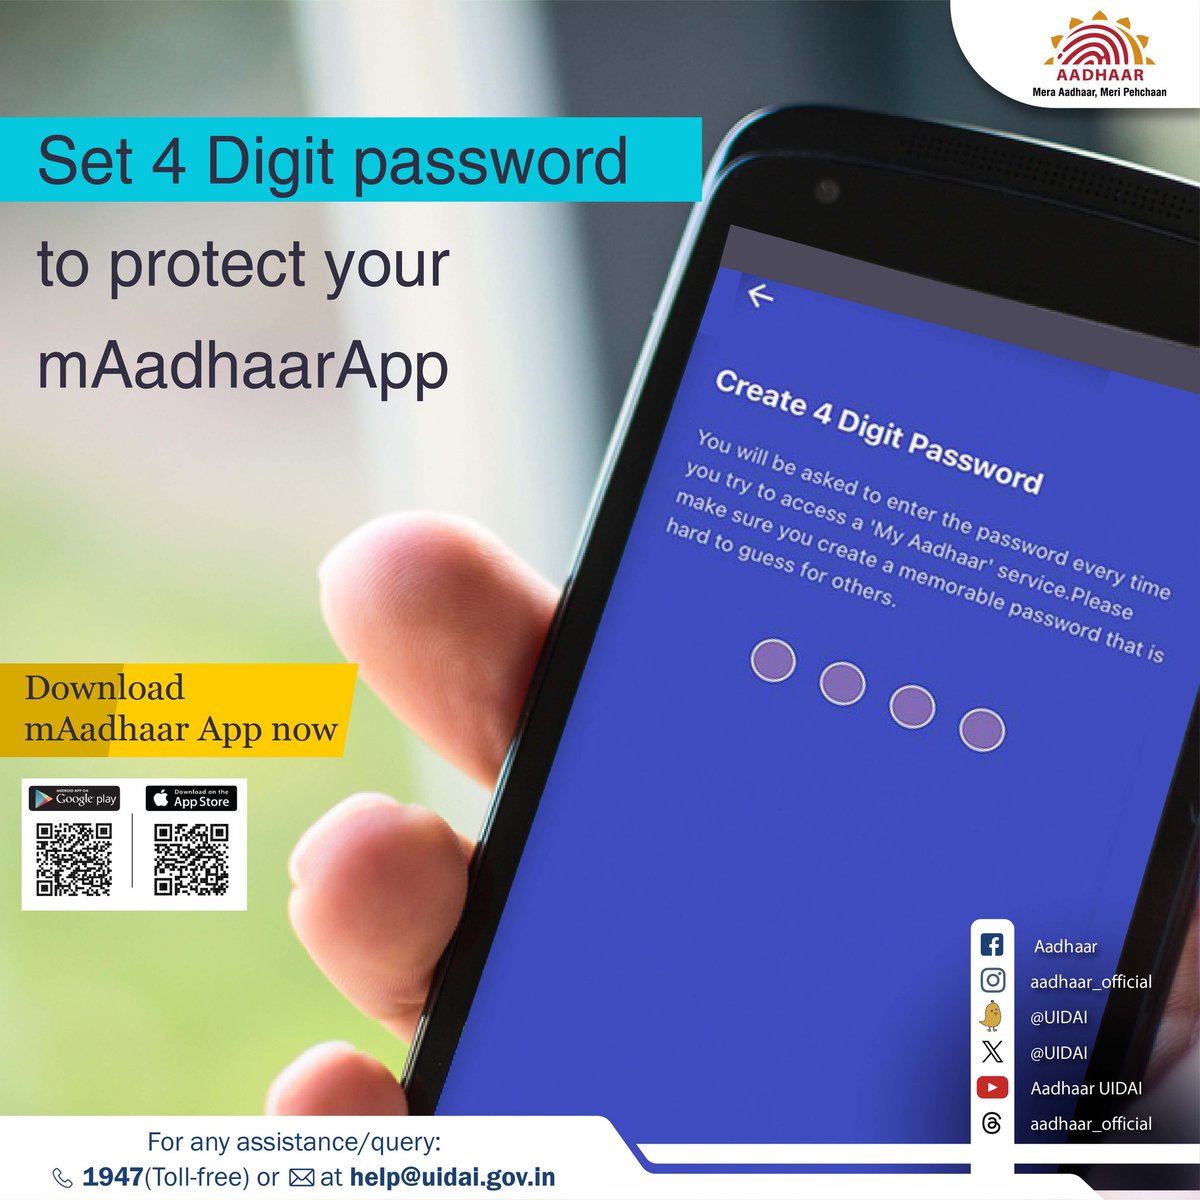 Set a 4-digit password for your #mAadhaar app to use any Aadhaar-related services like Aadhaar Lock/ Unlock, Biometric Lock/ Unlock, Generate VID, eKYC, etc. Install the #mAadhaarApp now from the Google Play Store or App Store.